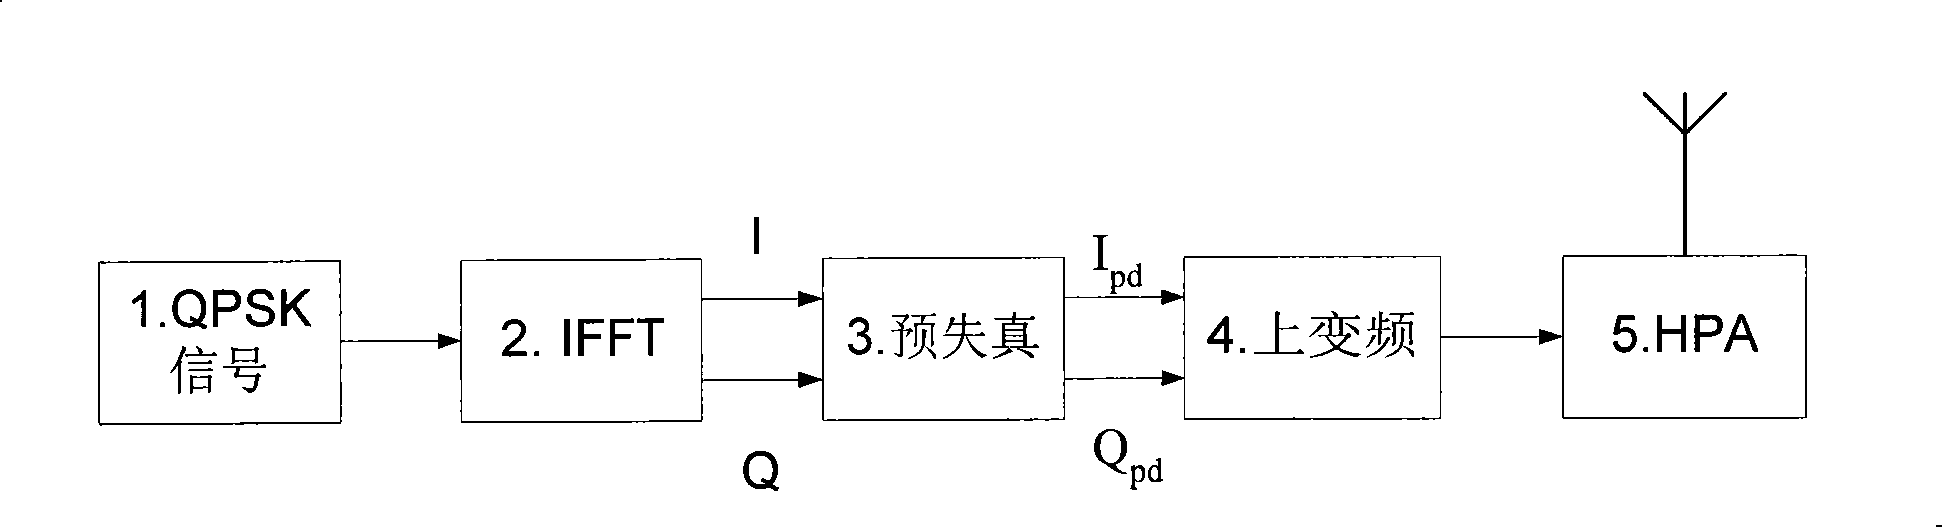 Method of implementing polynomial based open loop digital baseband predistorter